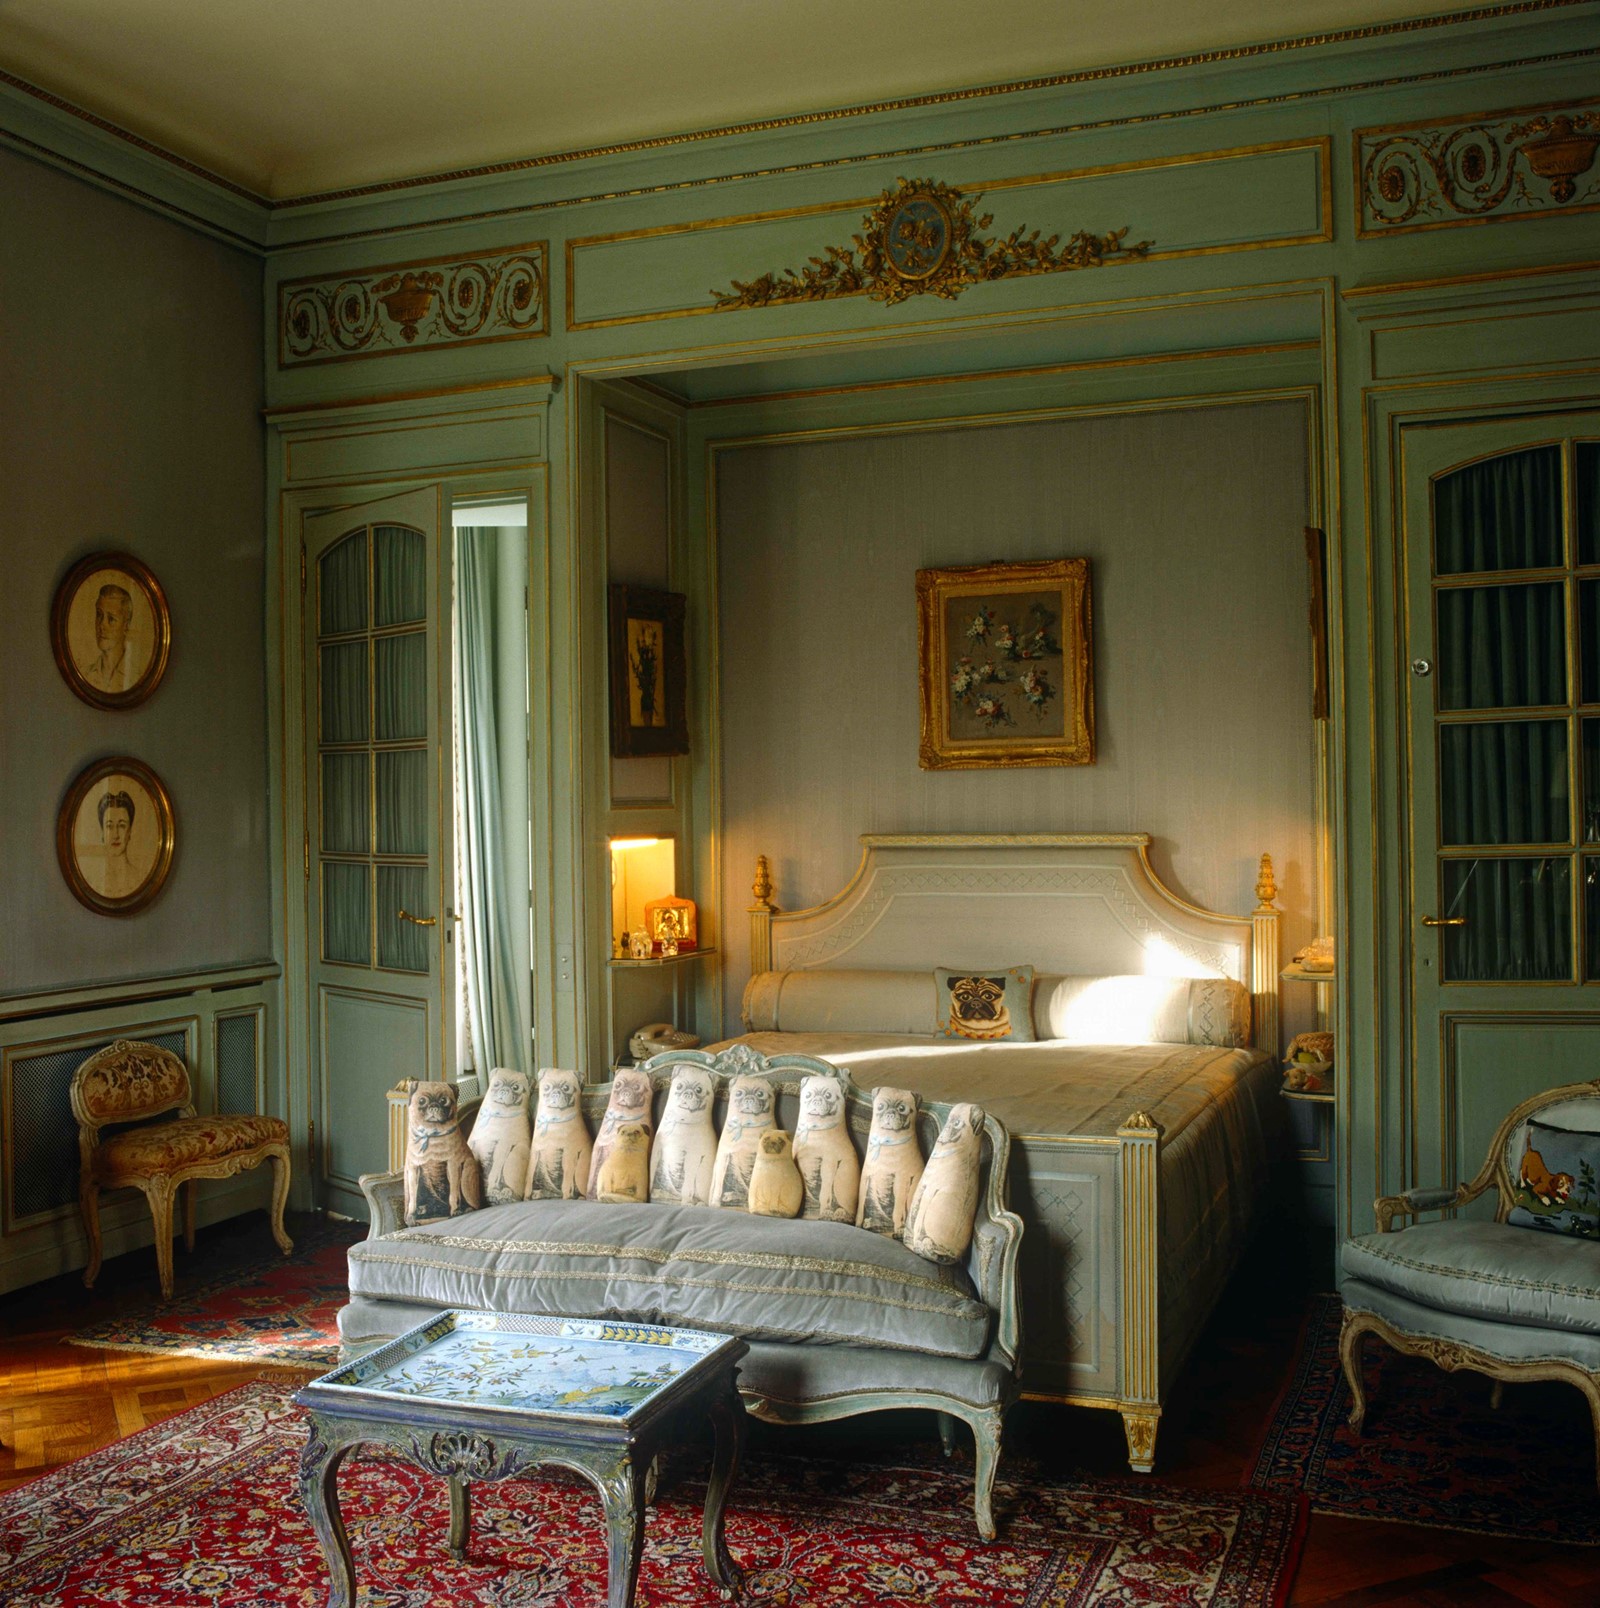 The Duchess of Windsor’s bedroom Wallis Simpson